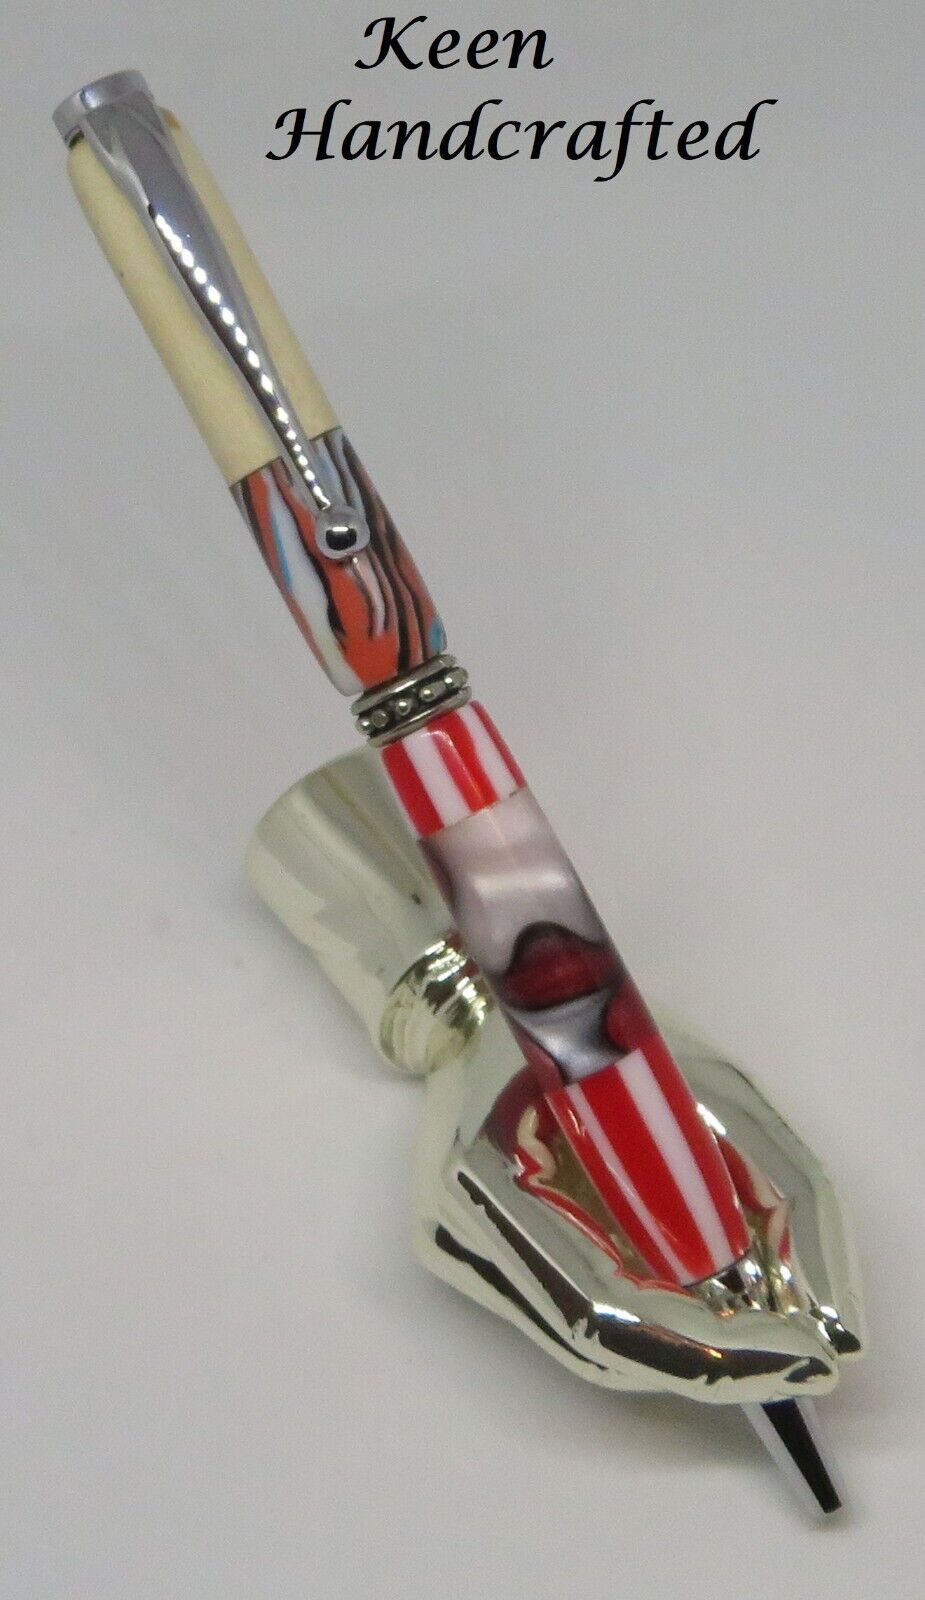 kq - Keen Handcrafted Handmade Segmented Chrome Slimline Pen